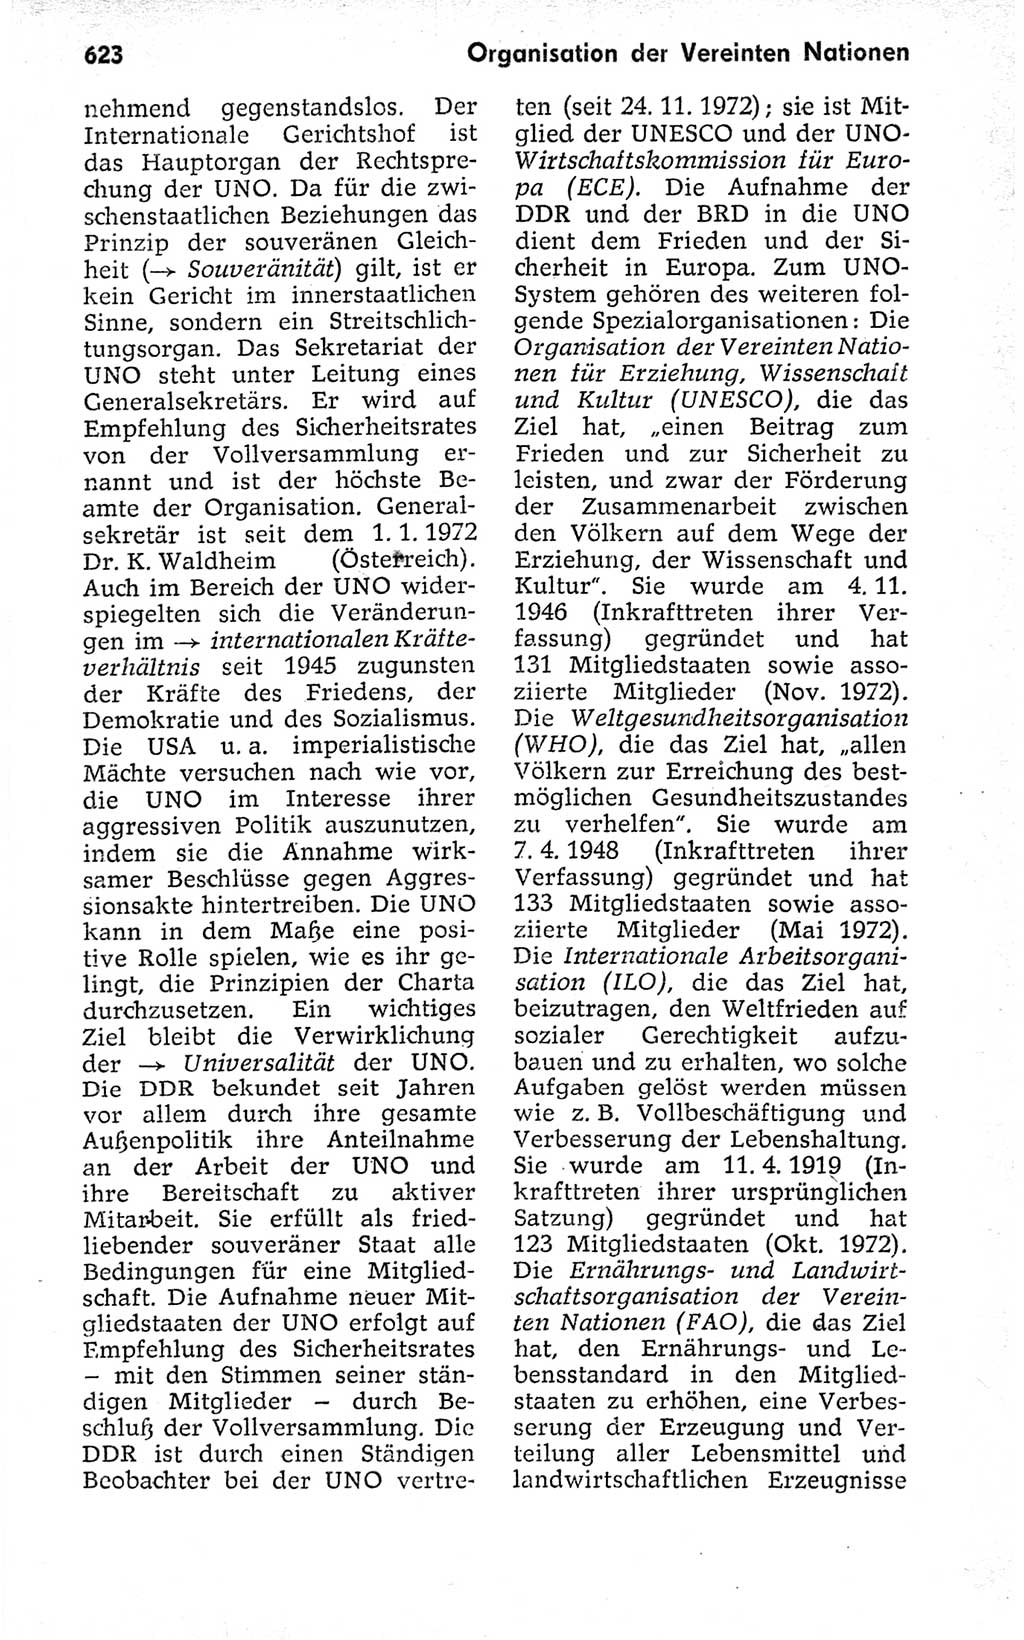 Kleines politisches Wörterbuch [Deutsche Demokratische Republik (DDR)] 1973, Seite 623 (Kl. pol. Wb. DDR 1973, S. 623)